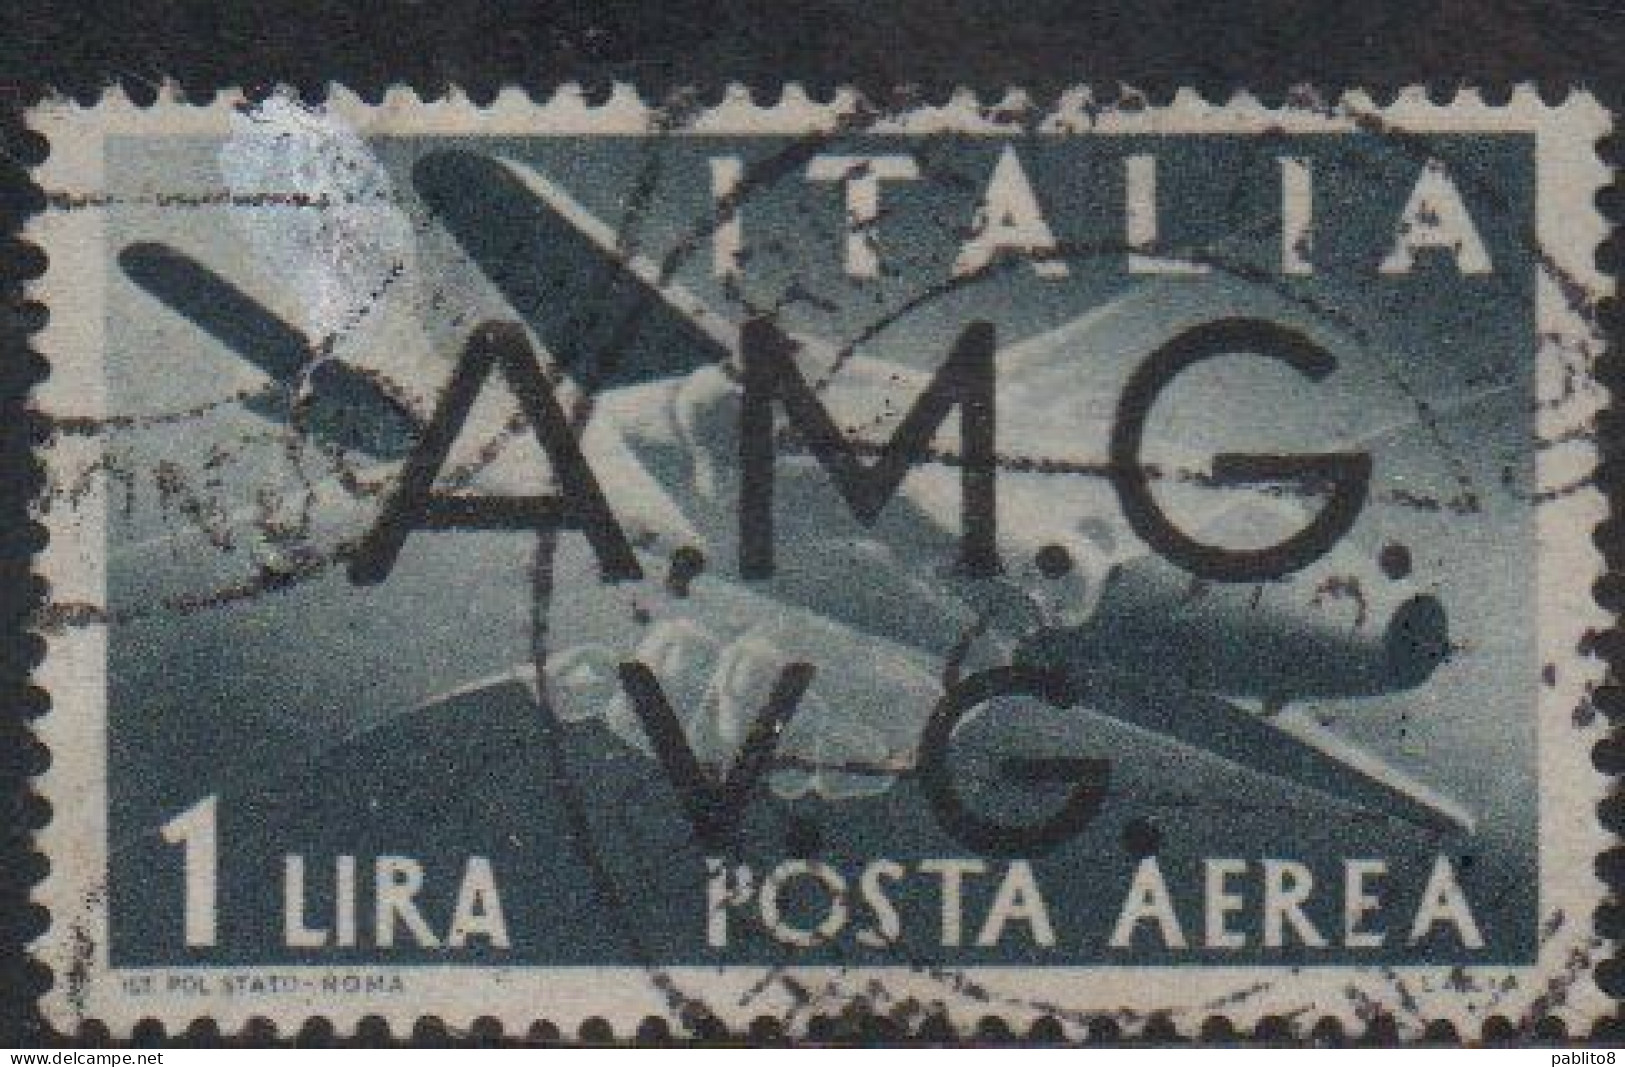 VENEZIA GIULIA 1945 - 1947 TRIESTE AMGVG AMG VG POSTA AEREA AIR MAIL LIRE 1 LIRA USATO USED OBLITERE' - Oblitérés